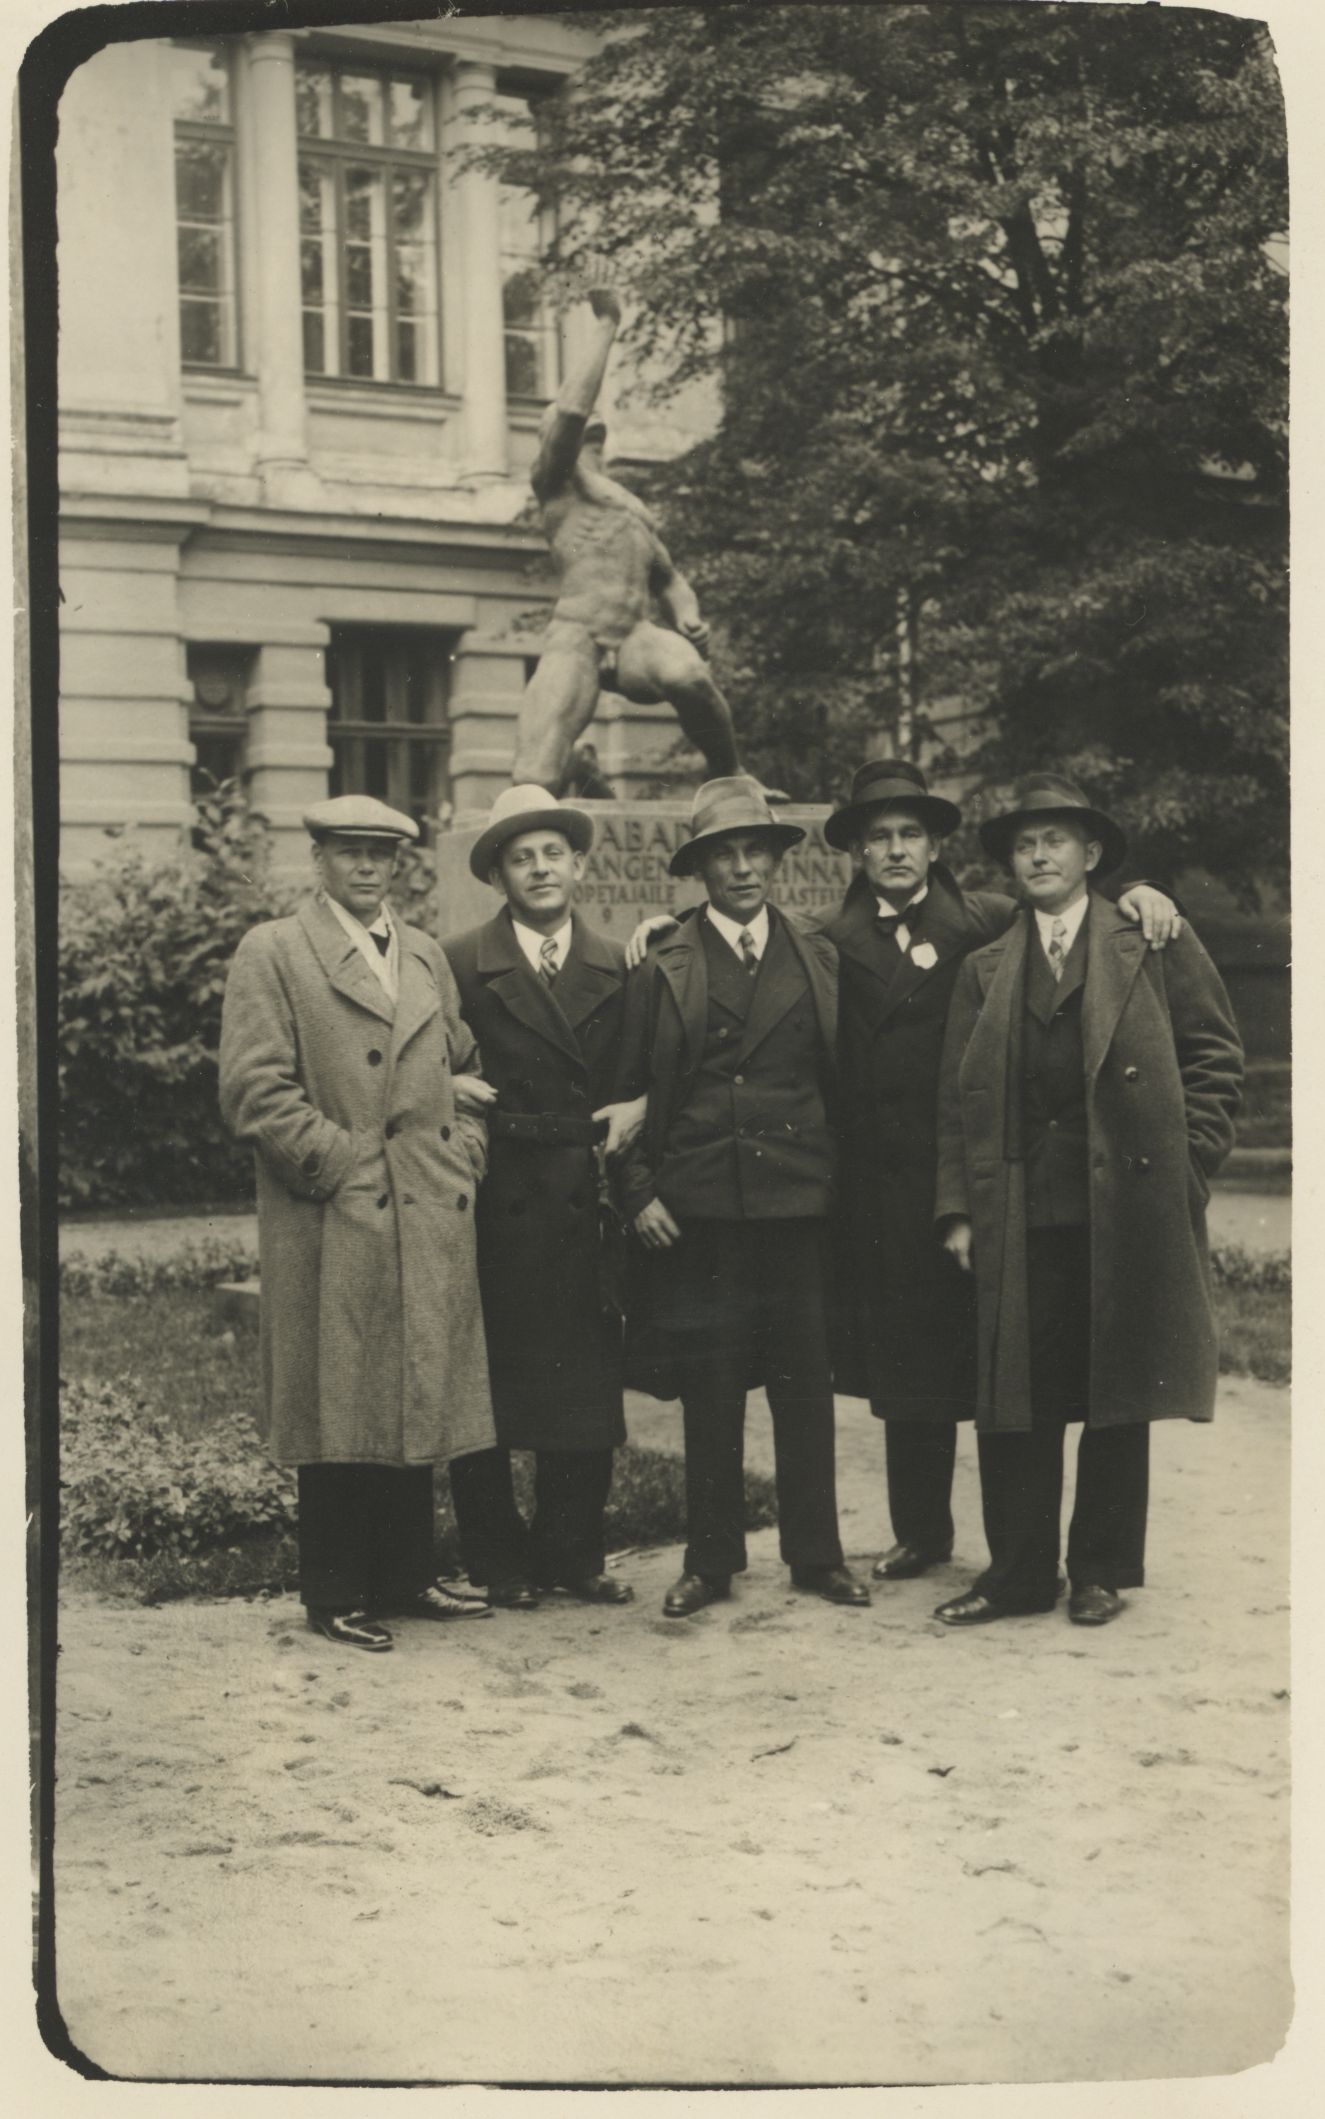 H. Visnapuu, yes. Sütiste, Albert Kivikas, August Mälk, Erni Mouse in Tallinn in front of Real School